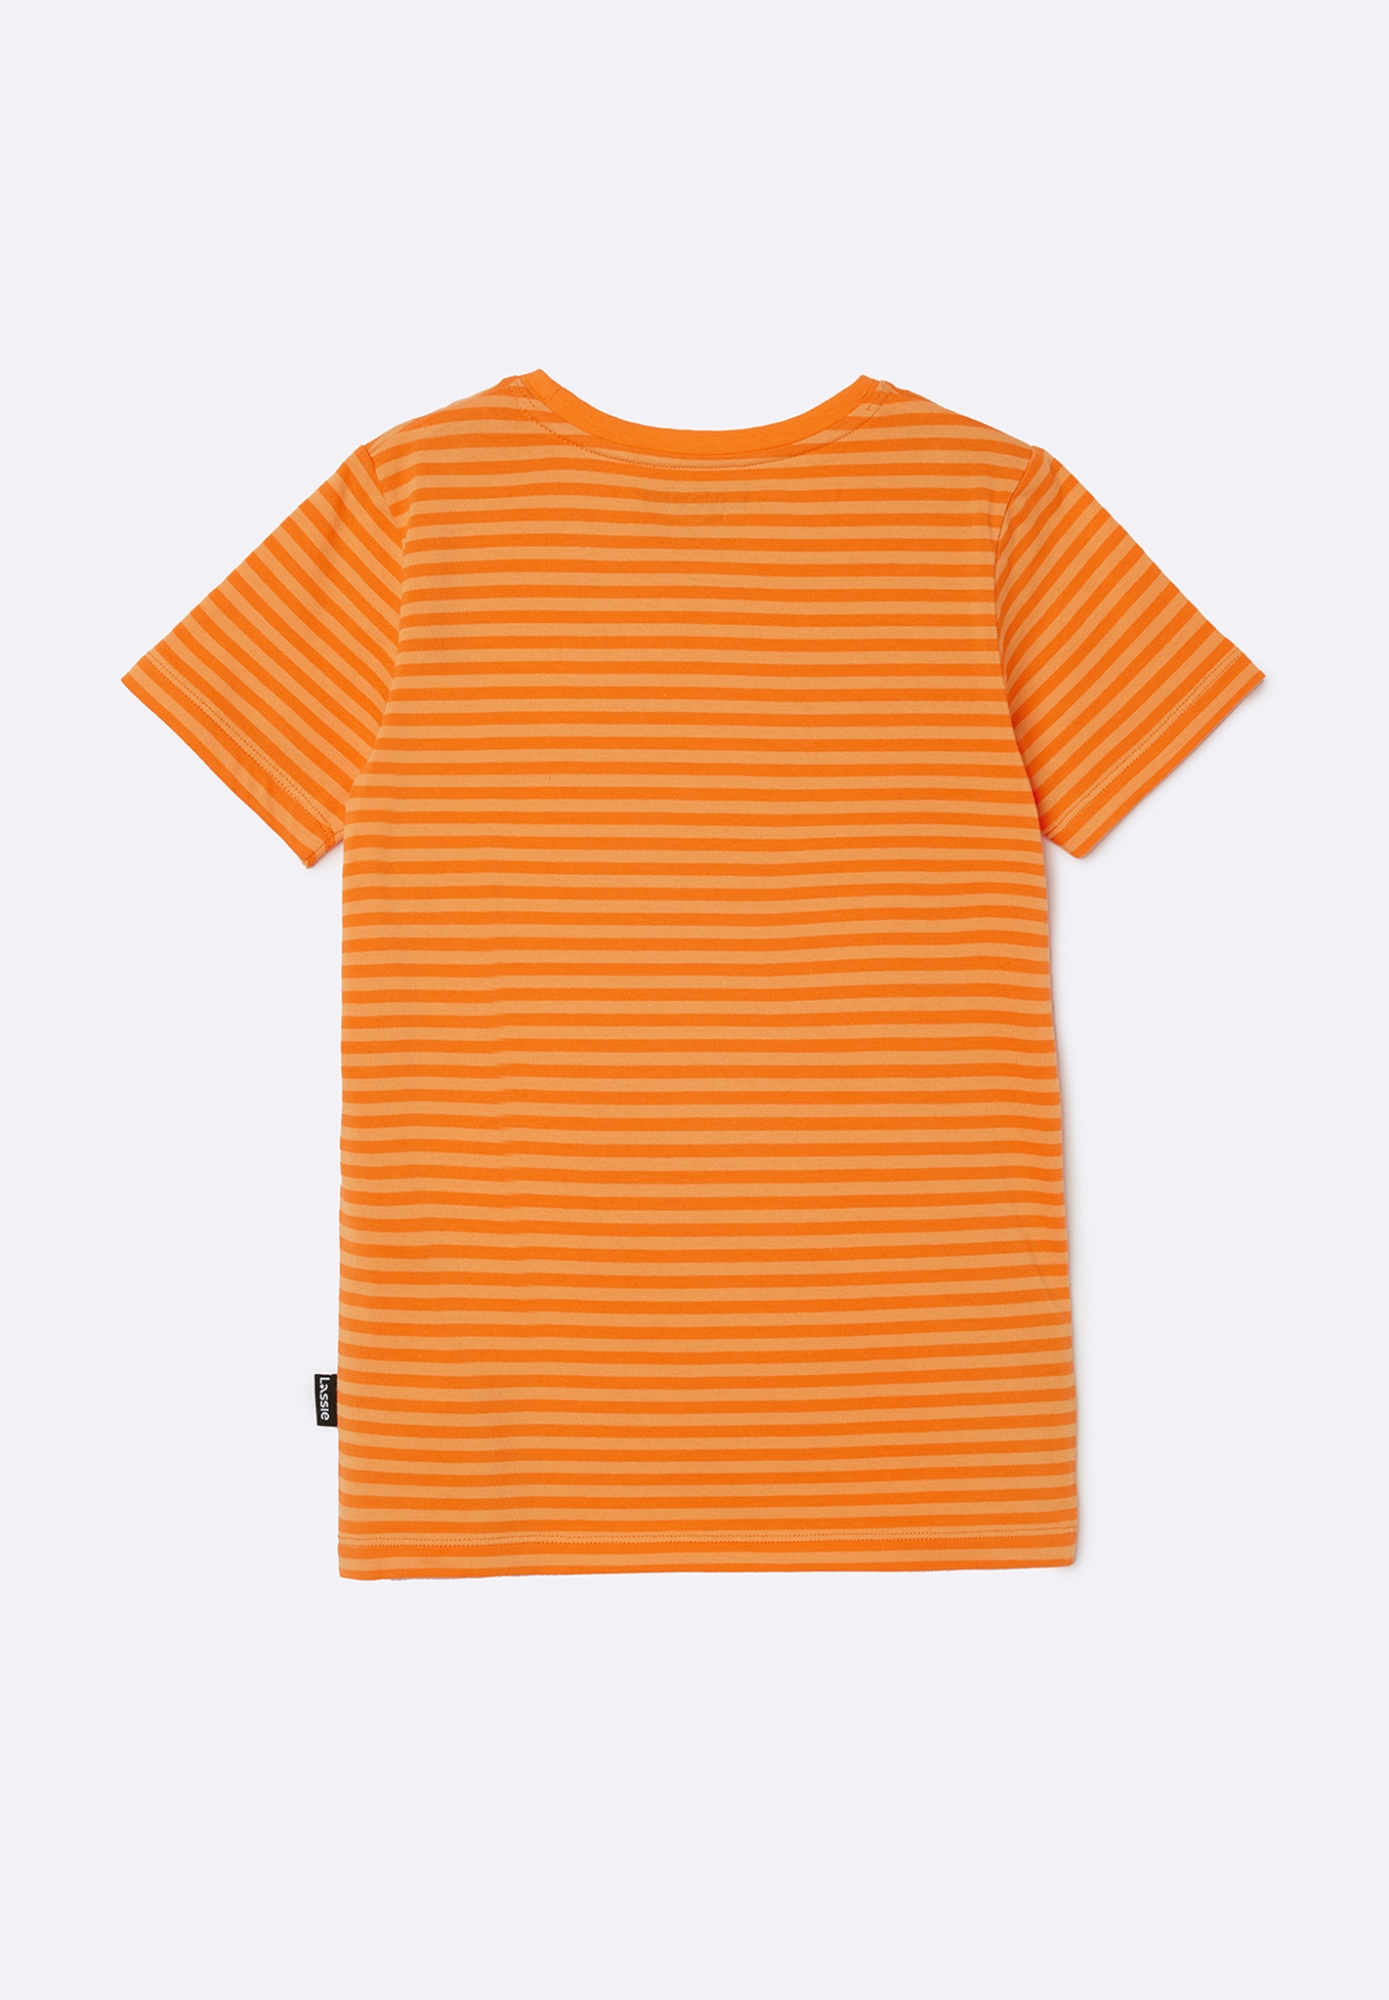 Детская футболка Lassie Valoon Оранжевая | фото